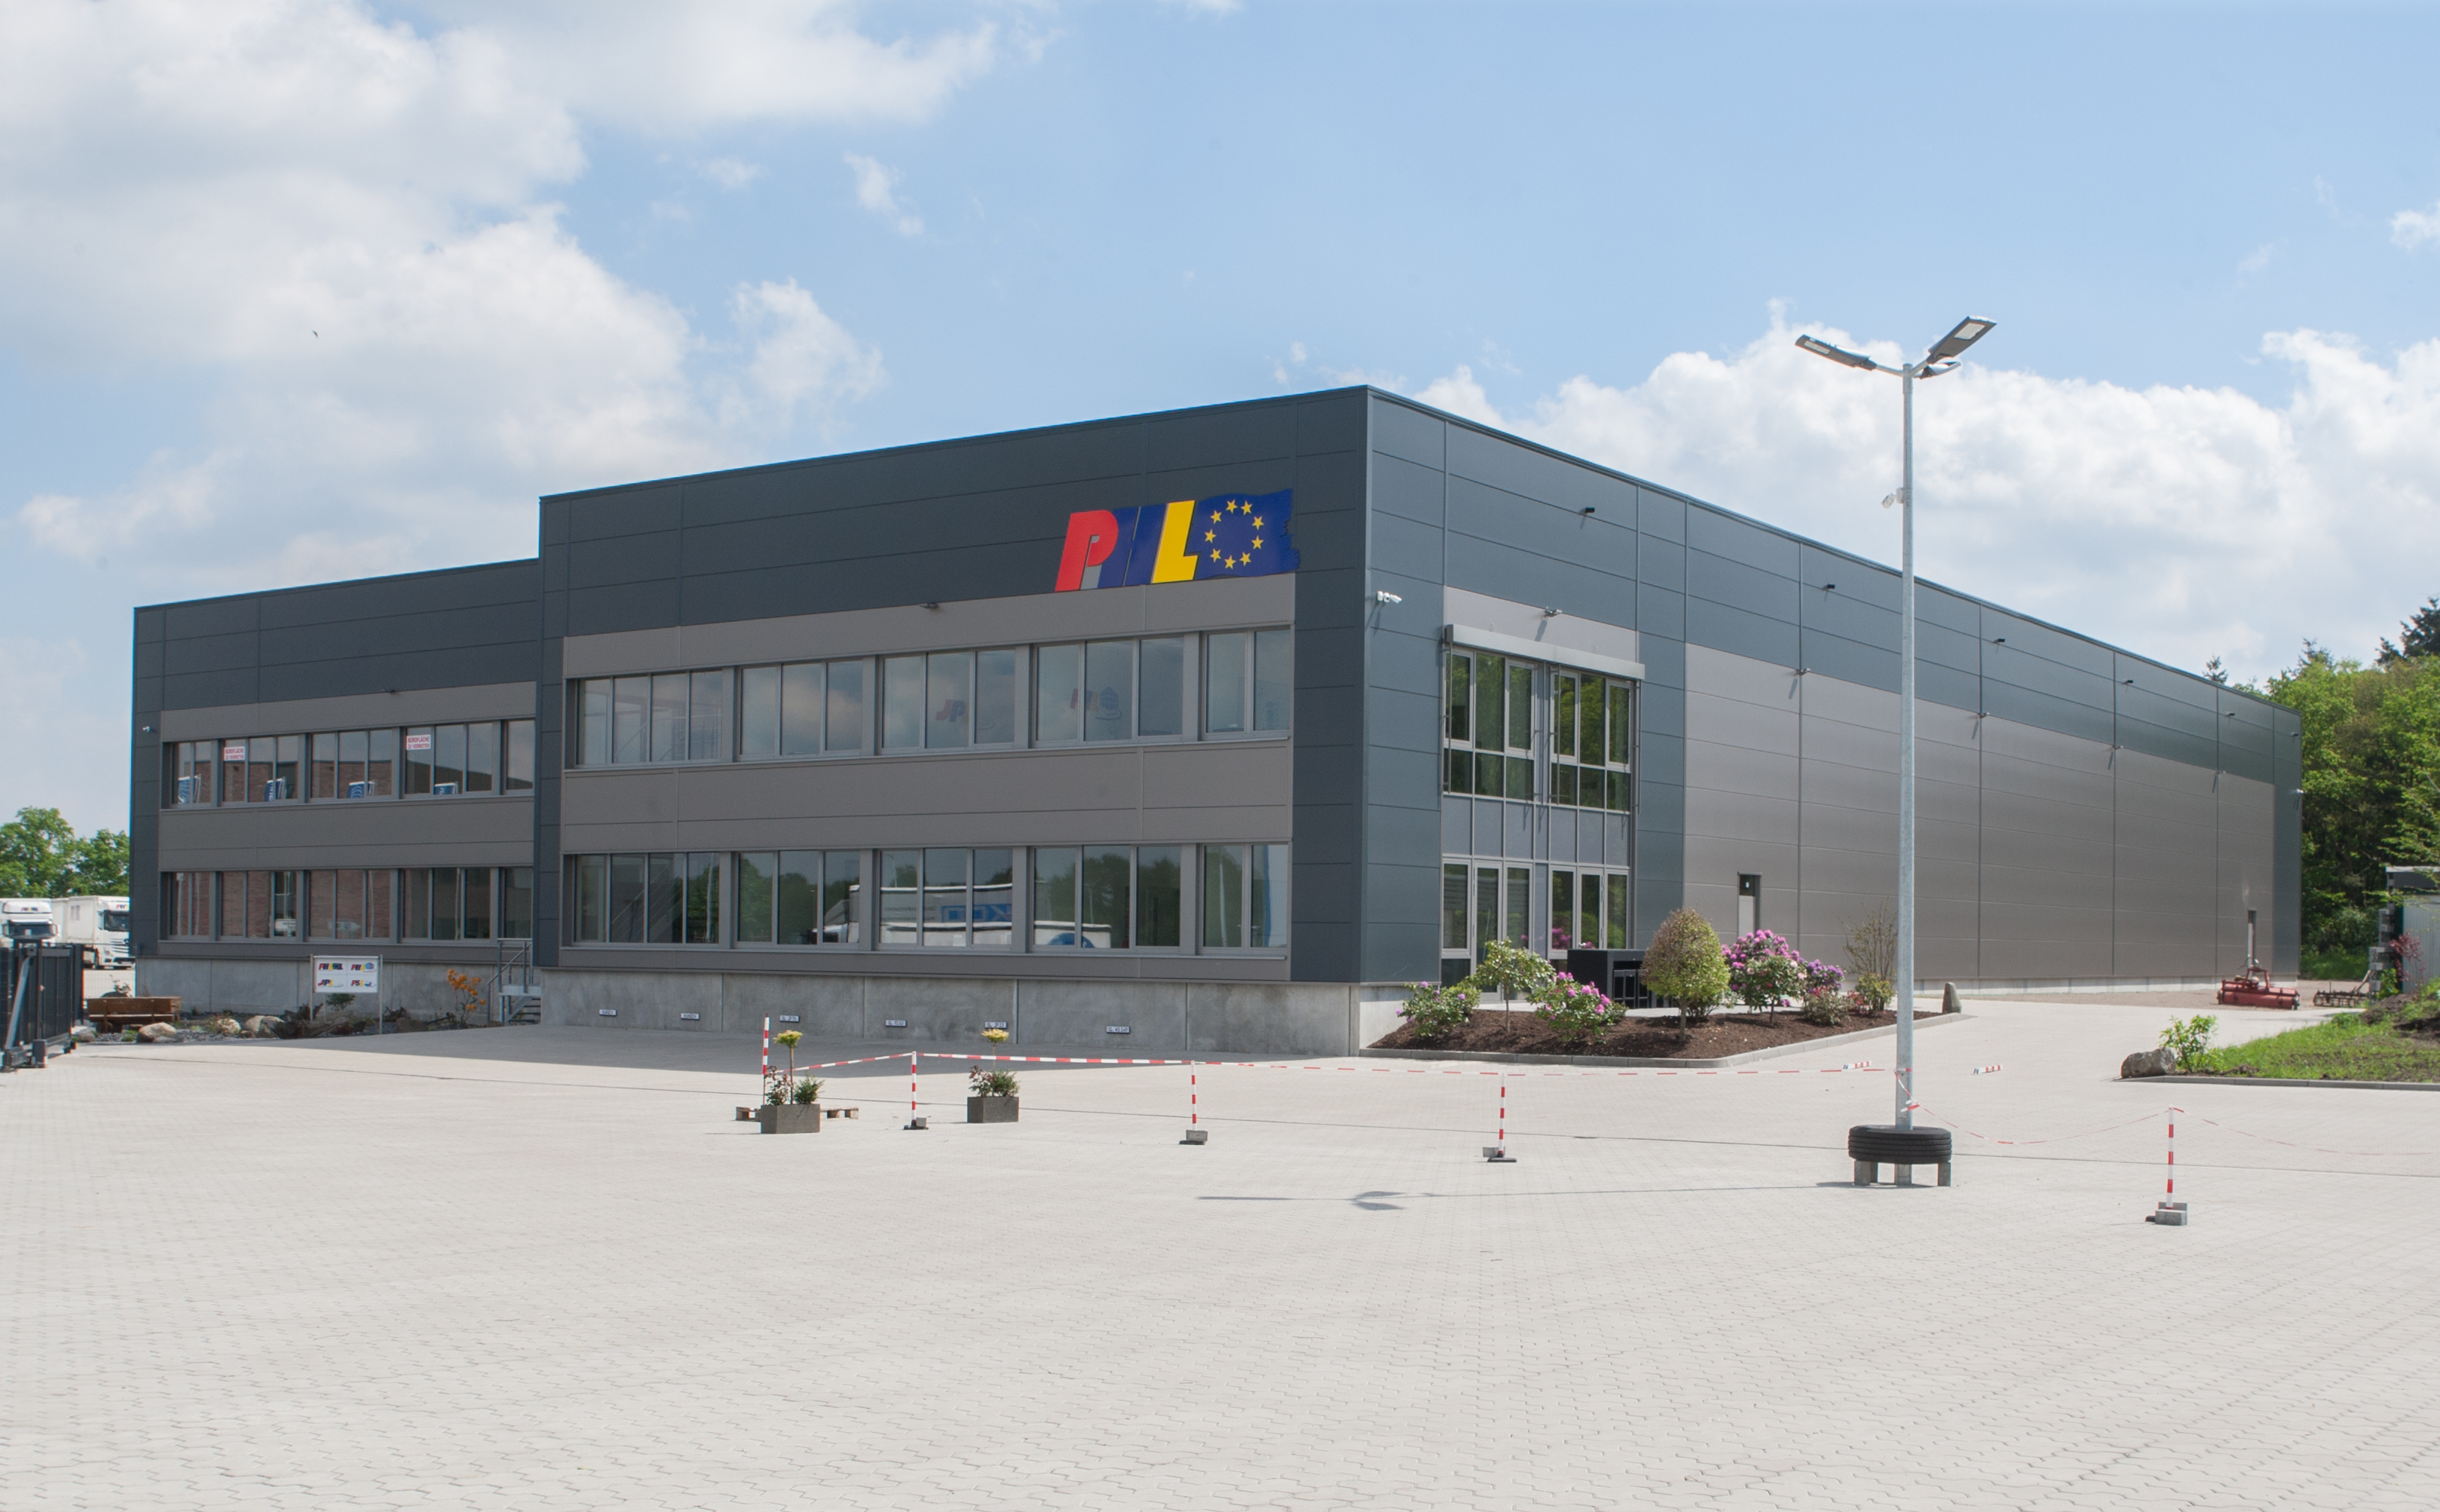 PHL Logistik GmbH